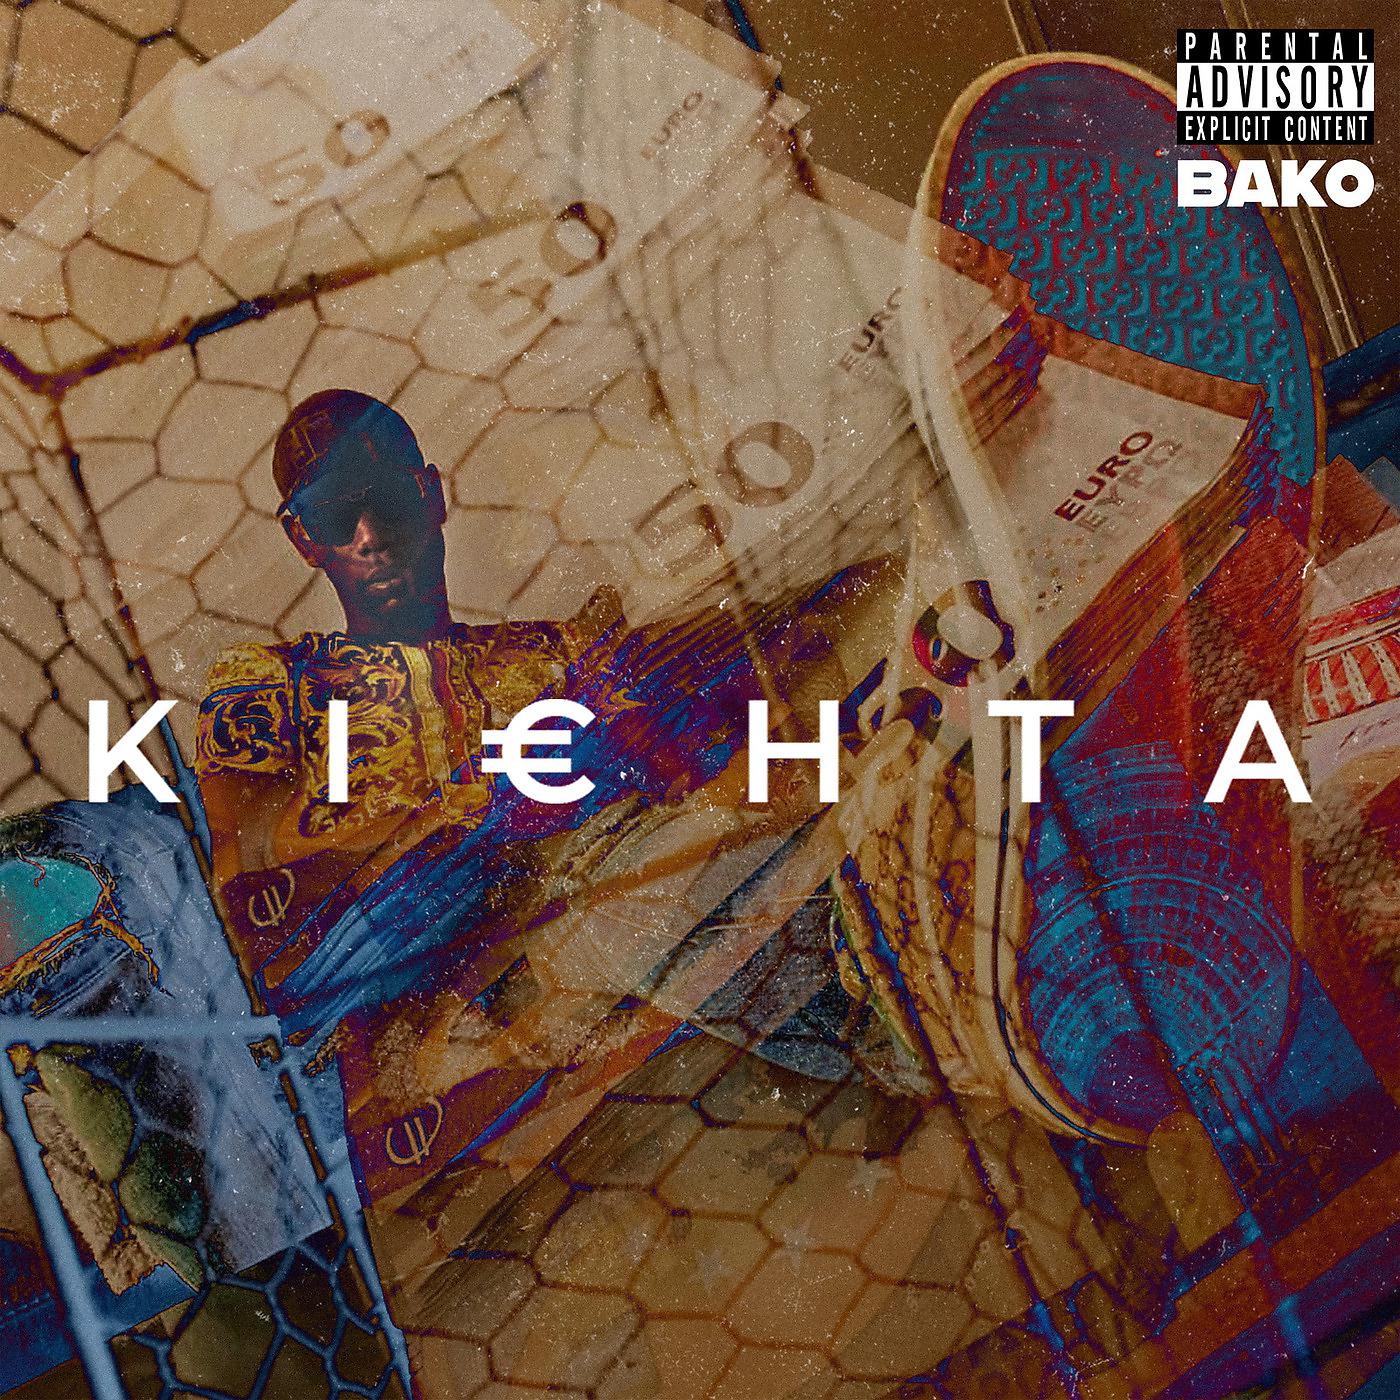 Постер альбома Kichta